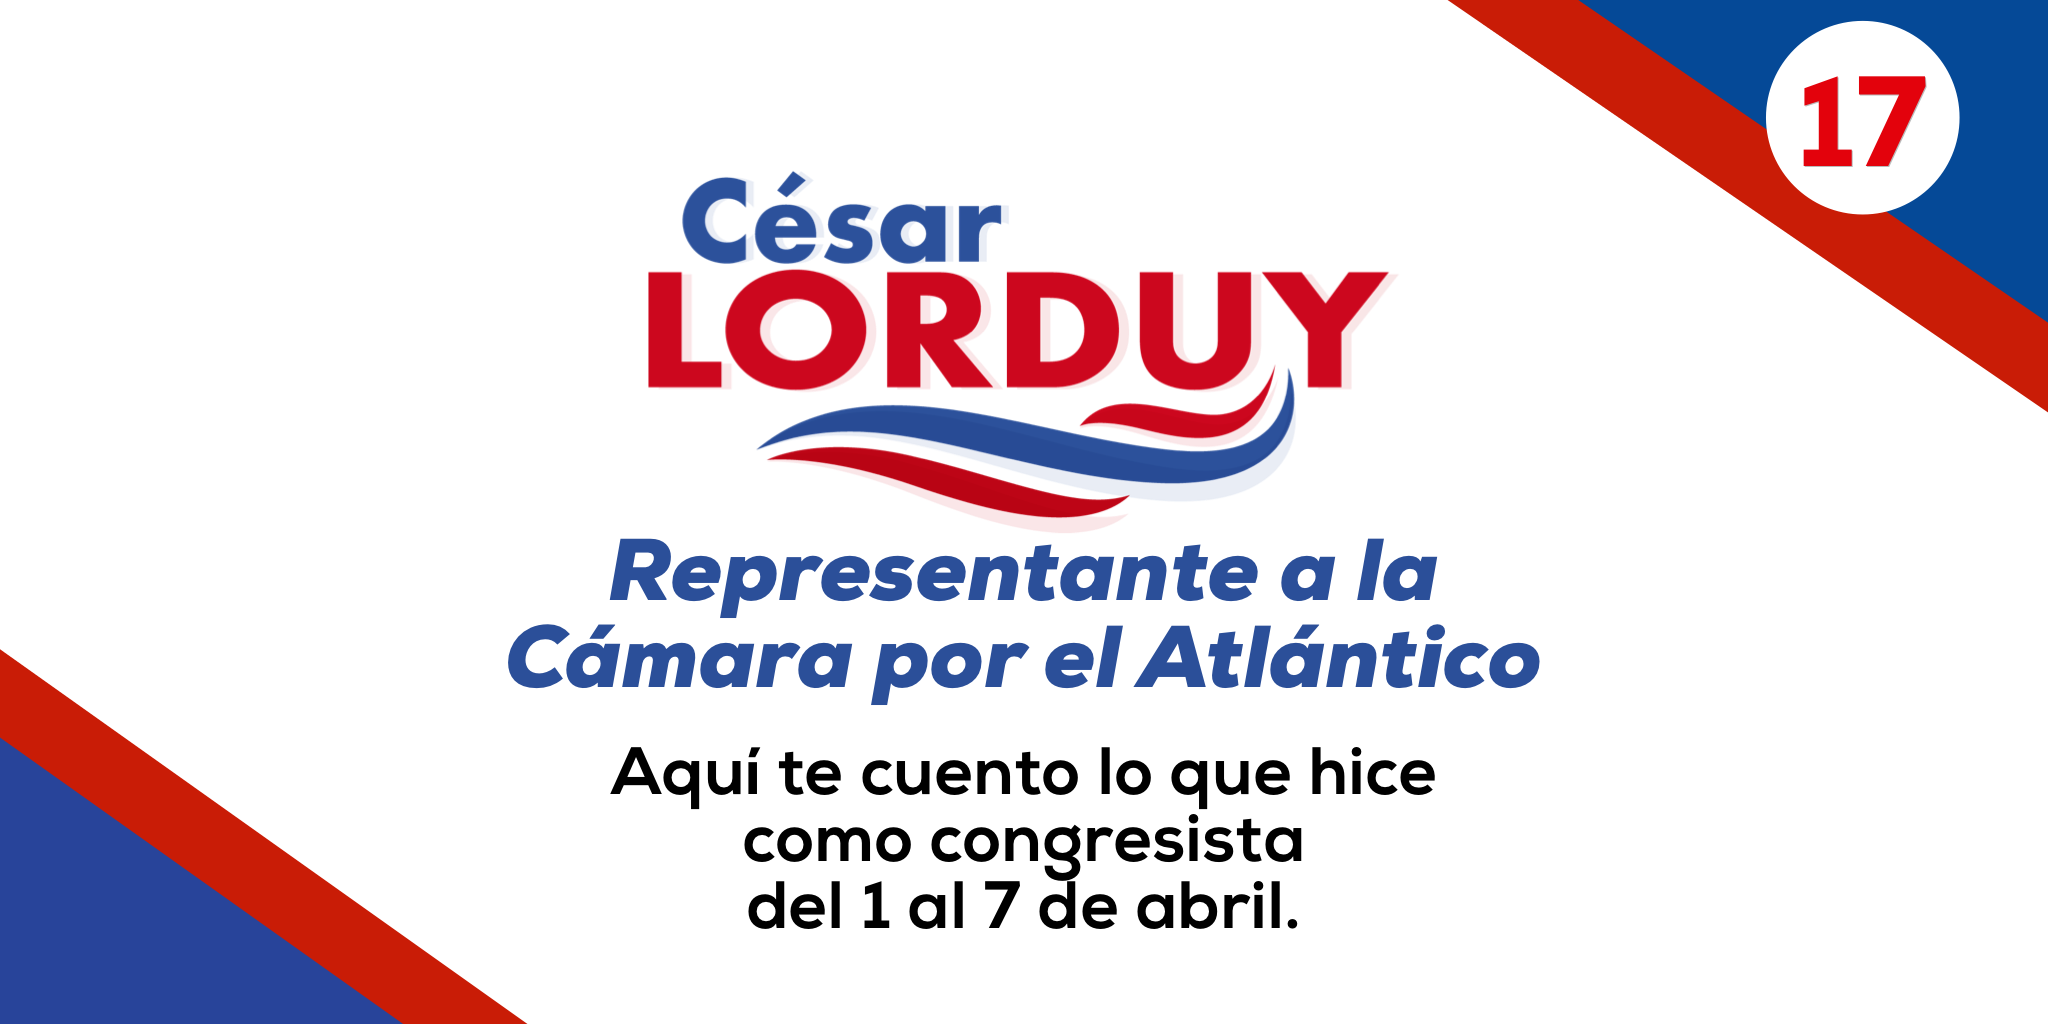 Informe de gestión No. 17 del Representante a la Cámara por el departamento del Atlántico, Cesar Lorduy 1